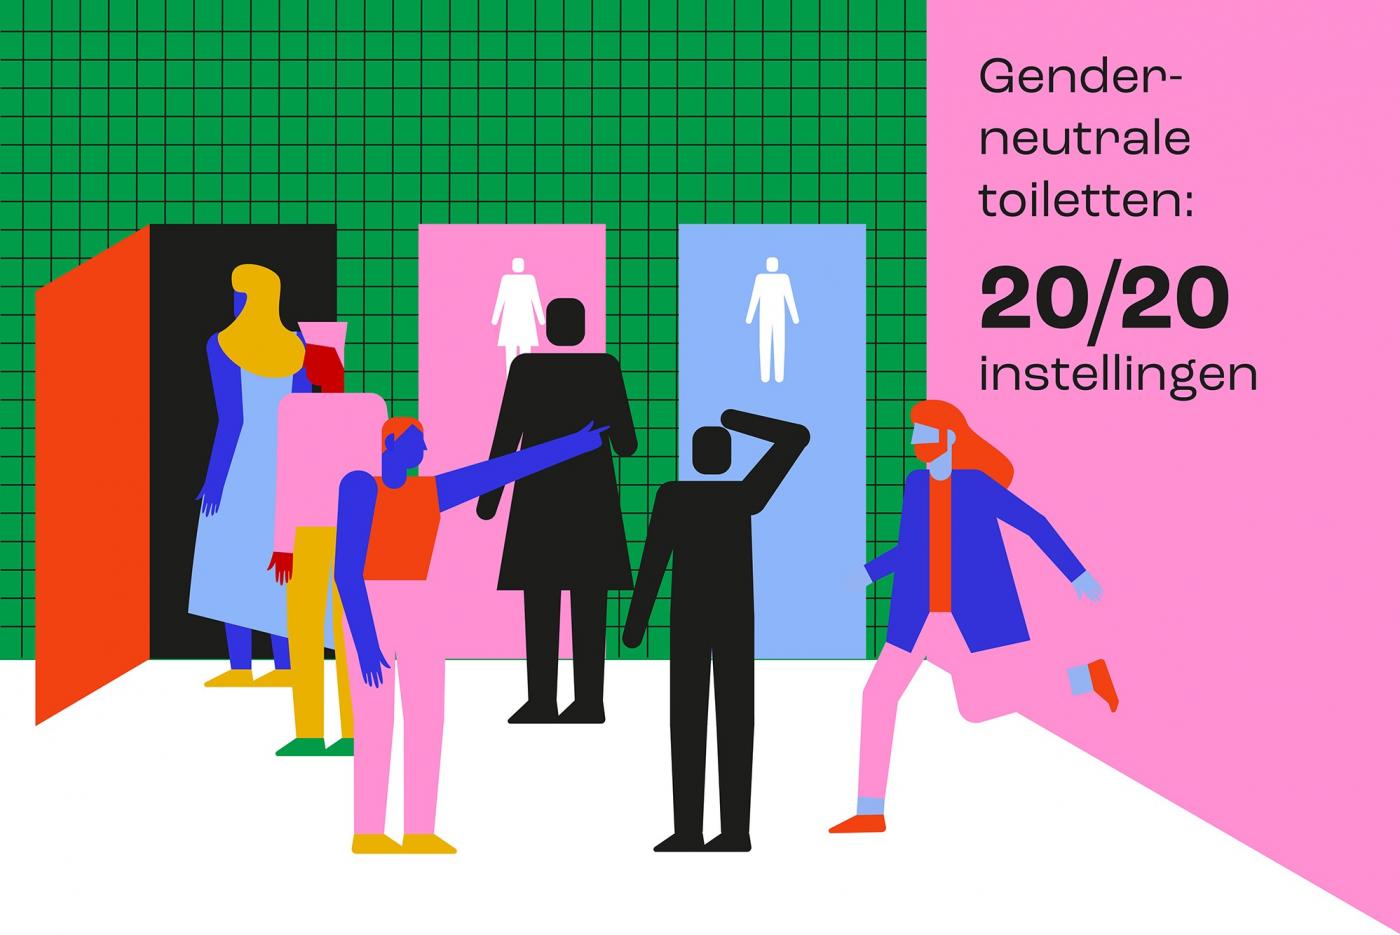 diversiteit: genderneutrale toiletten. Illustratie: Jowan de Haan